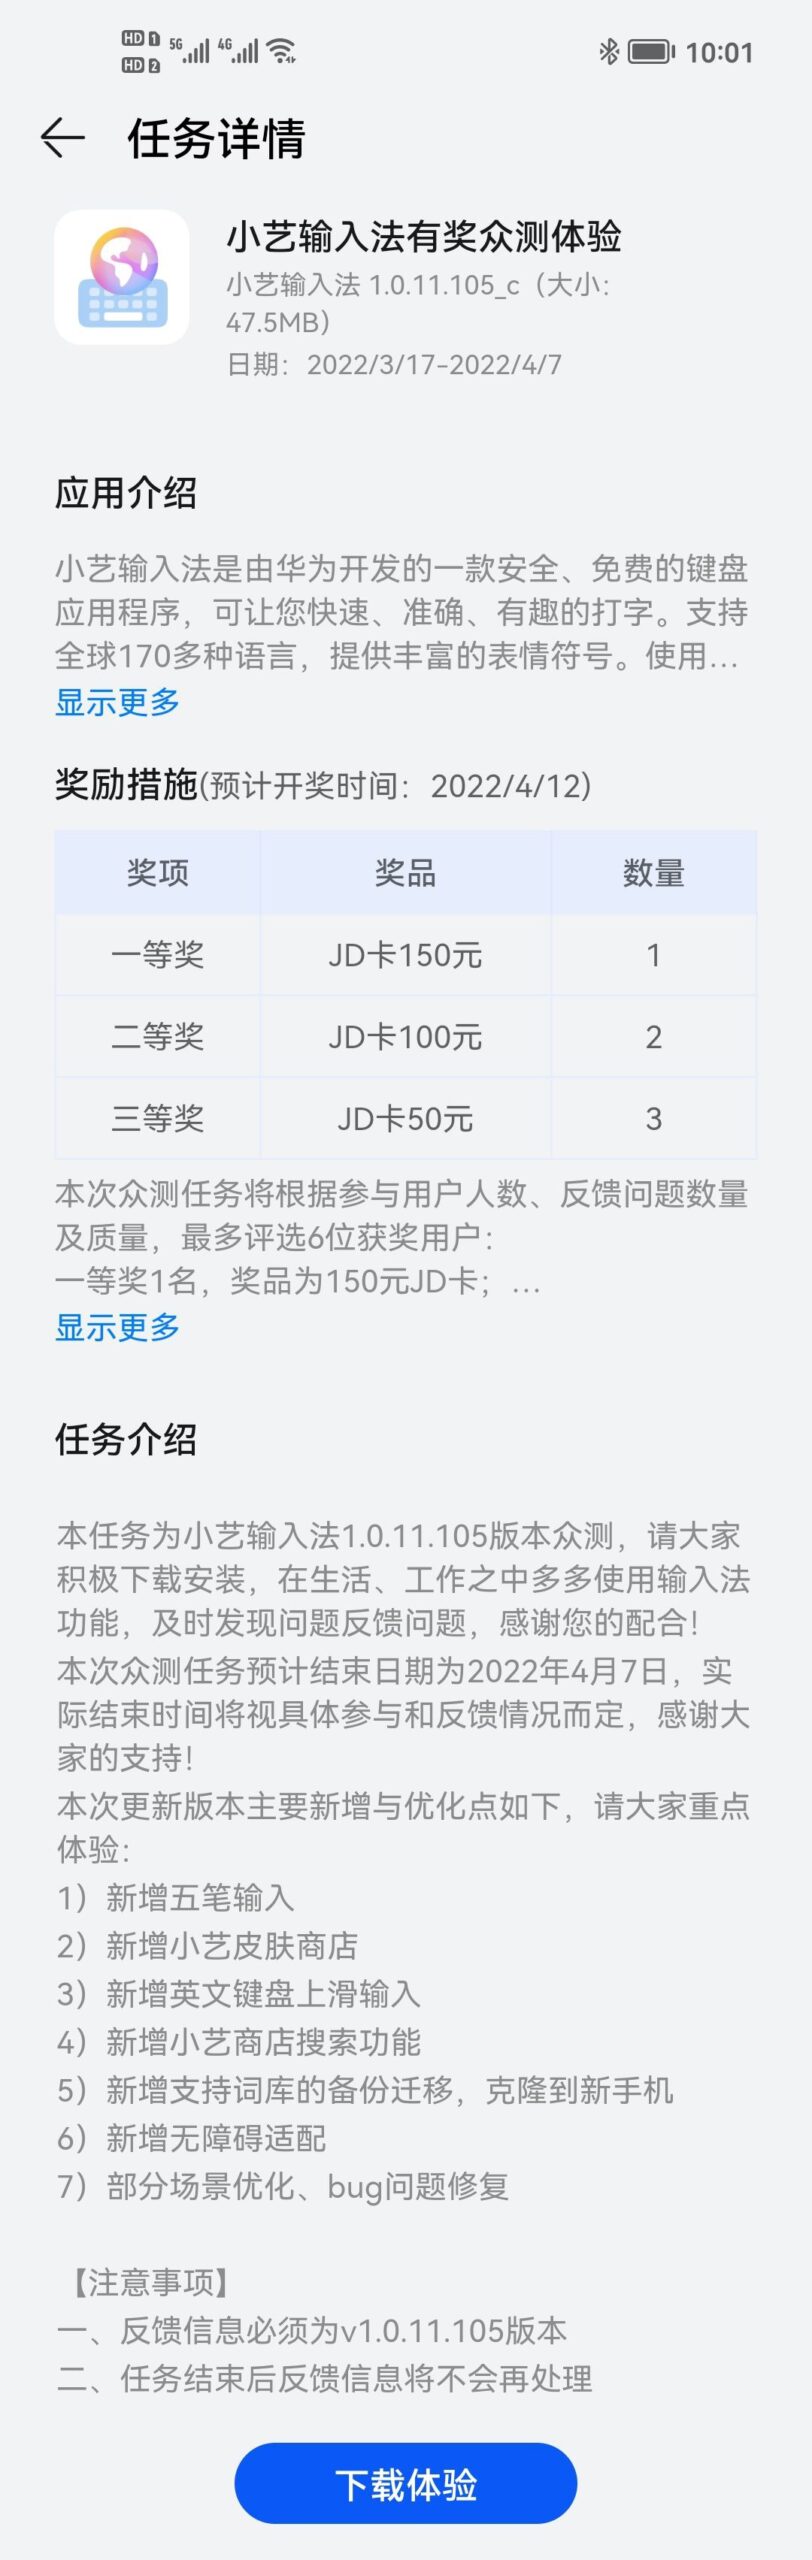 Huawei Celia Keyboard 1.0.11.105_c public test